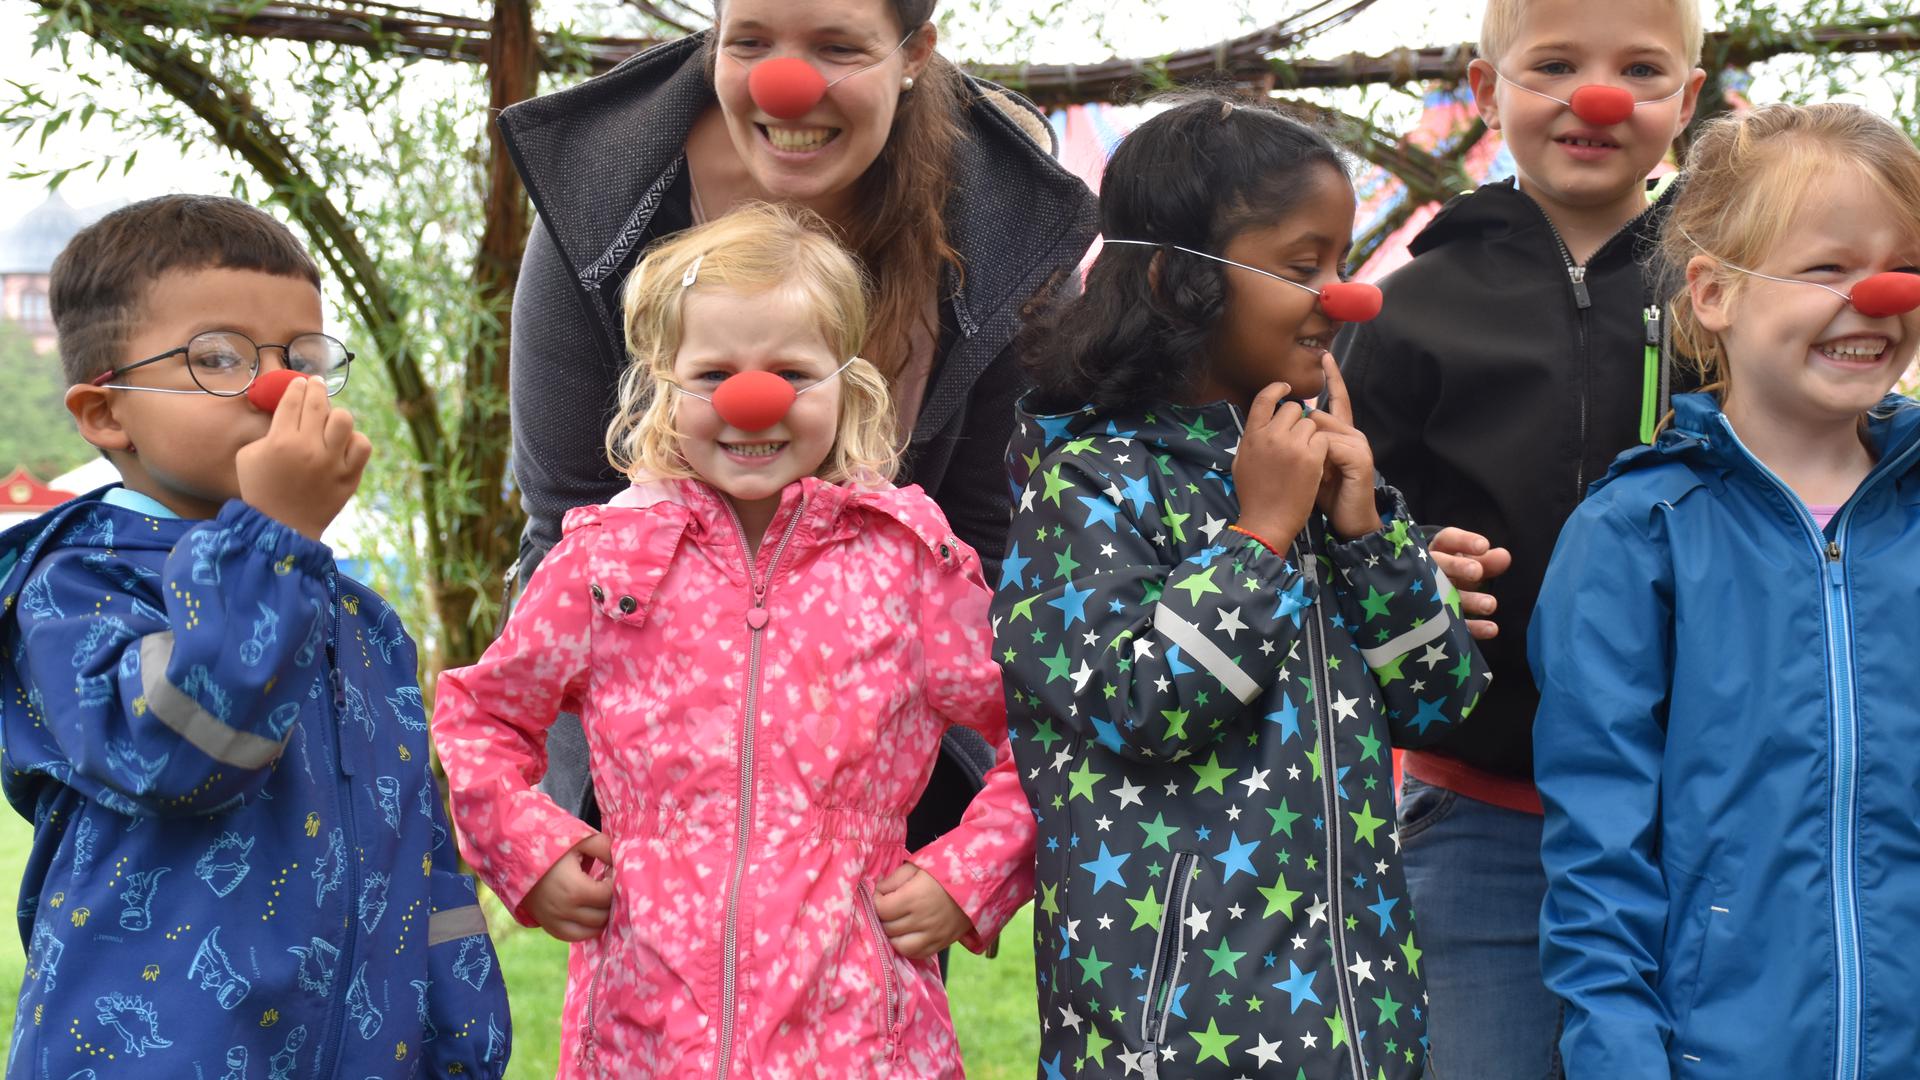 Spaß mit roten Nasen: Erzieherin Karlotta Nübold will mit Kindern Clownereien und kreative Bewegungsspiele machen. Das gehört zum Konzept des Zirkuskindergartens, den sie in Pforzheim betreiben will. 